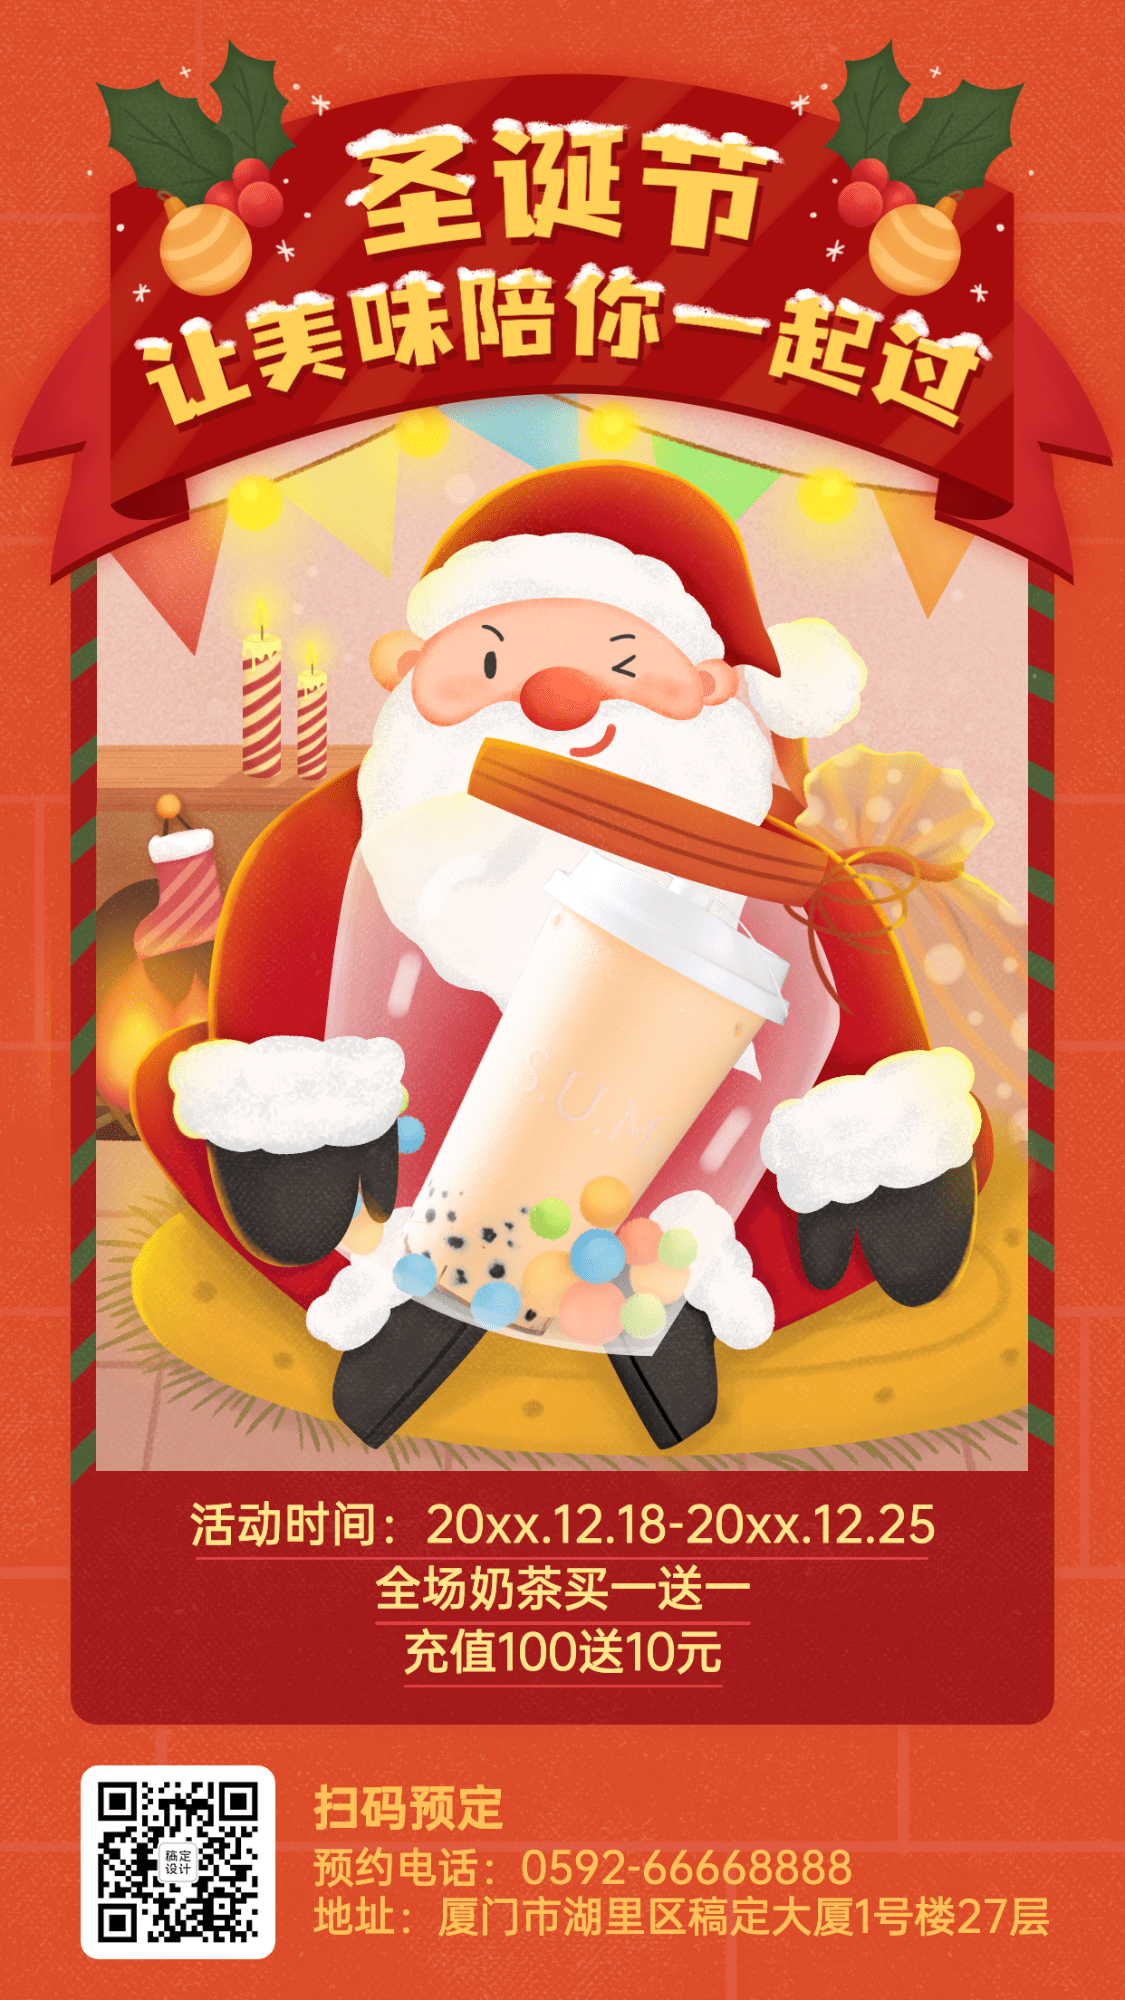 圣诞节奶茶饮品节日营销喜庆海报